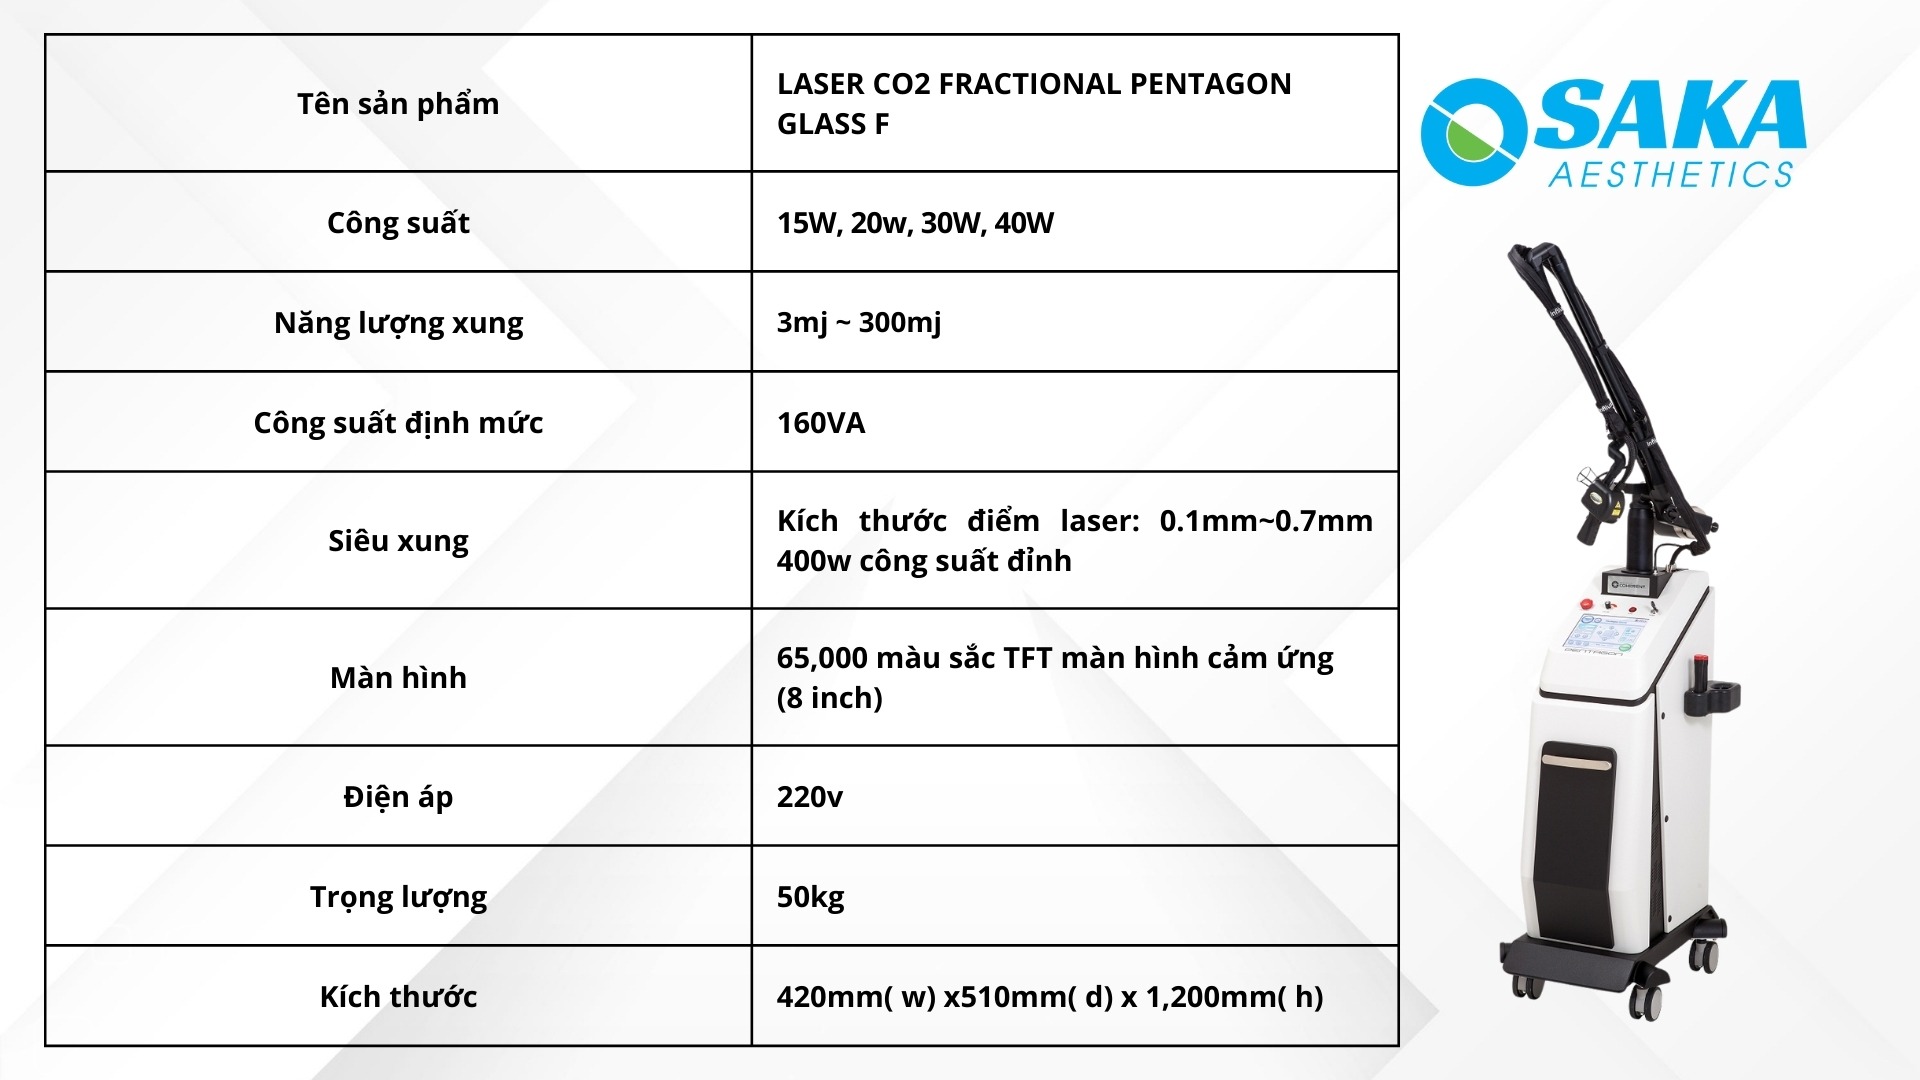 Thông số kỹ thuật của máy trị sẹo Laset CO2 Fractional Pentagon Glass F